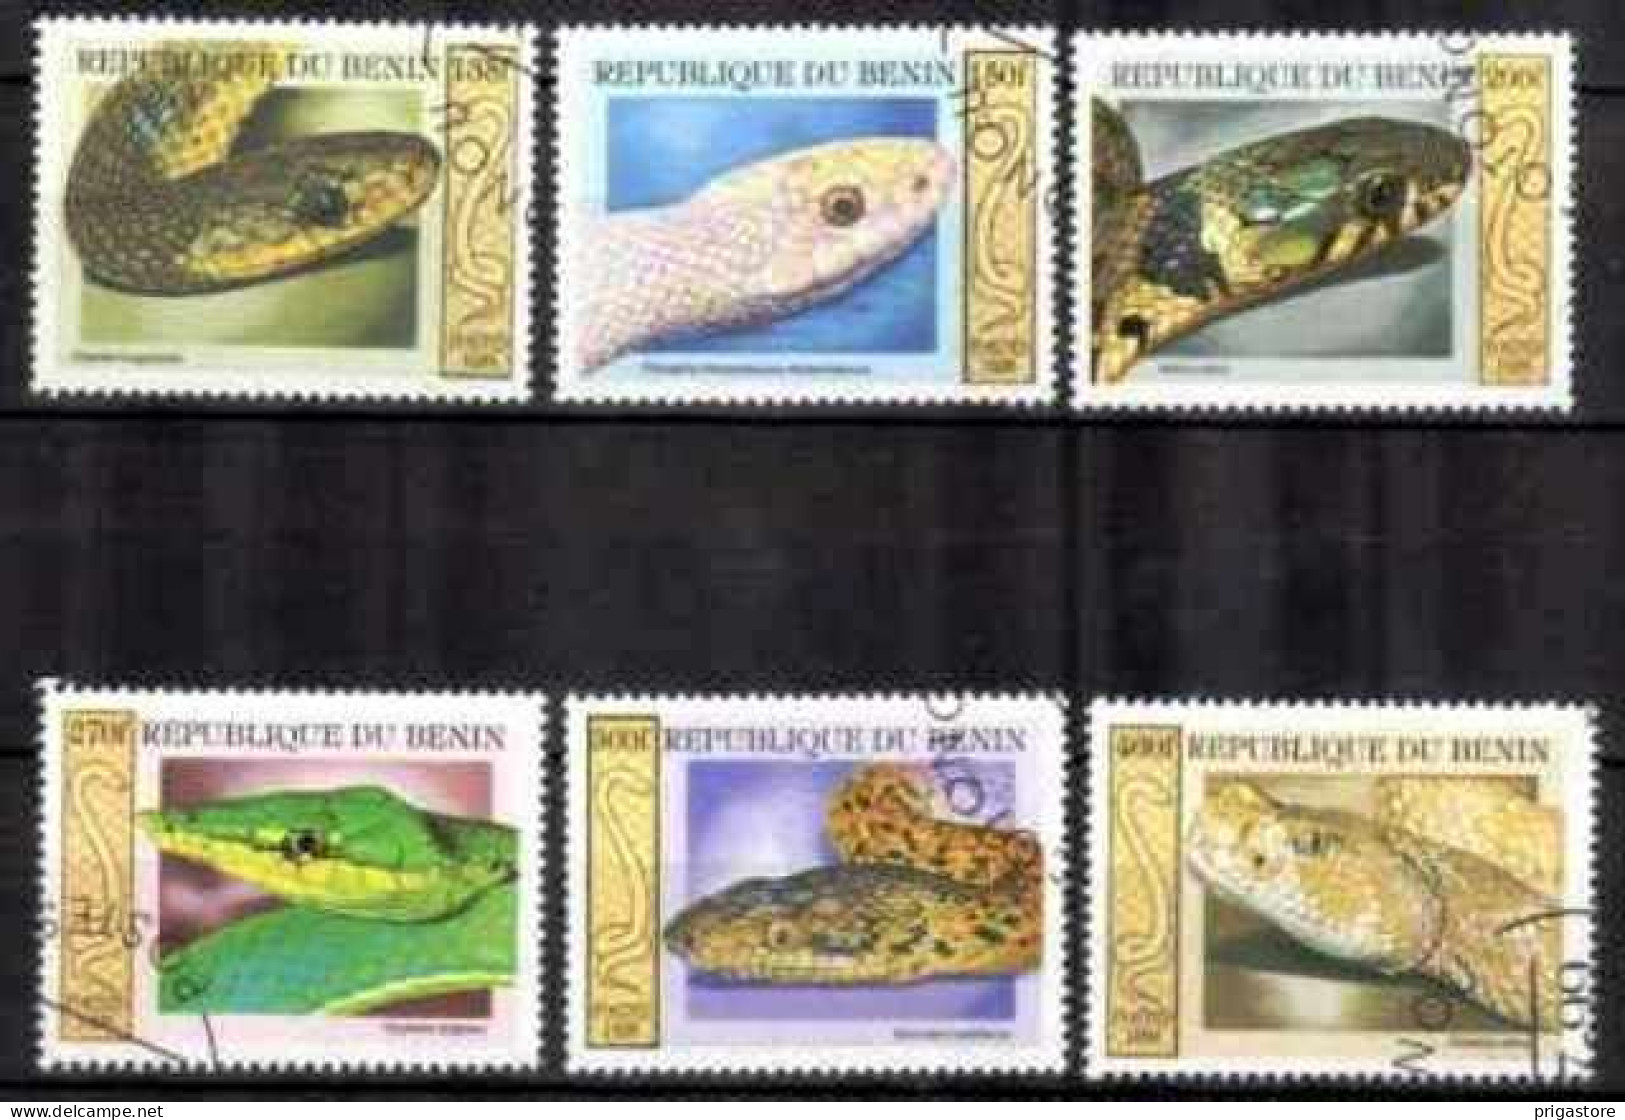 Animaux Serpents Bénin 1999 (30) Yvert N° 914 à 919 Oblitéré Used - Serpientes